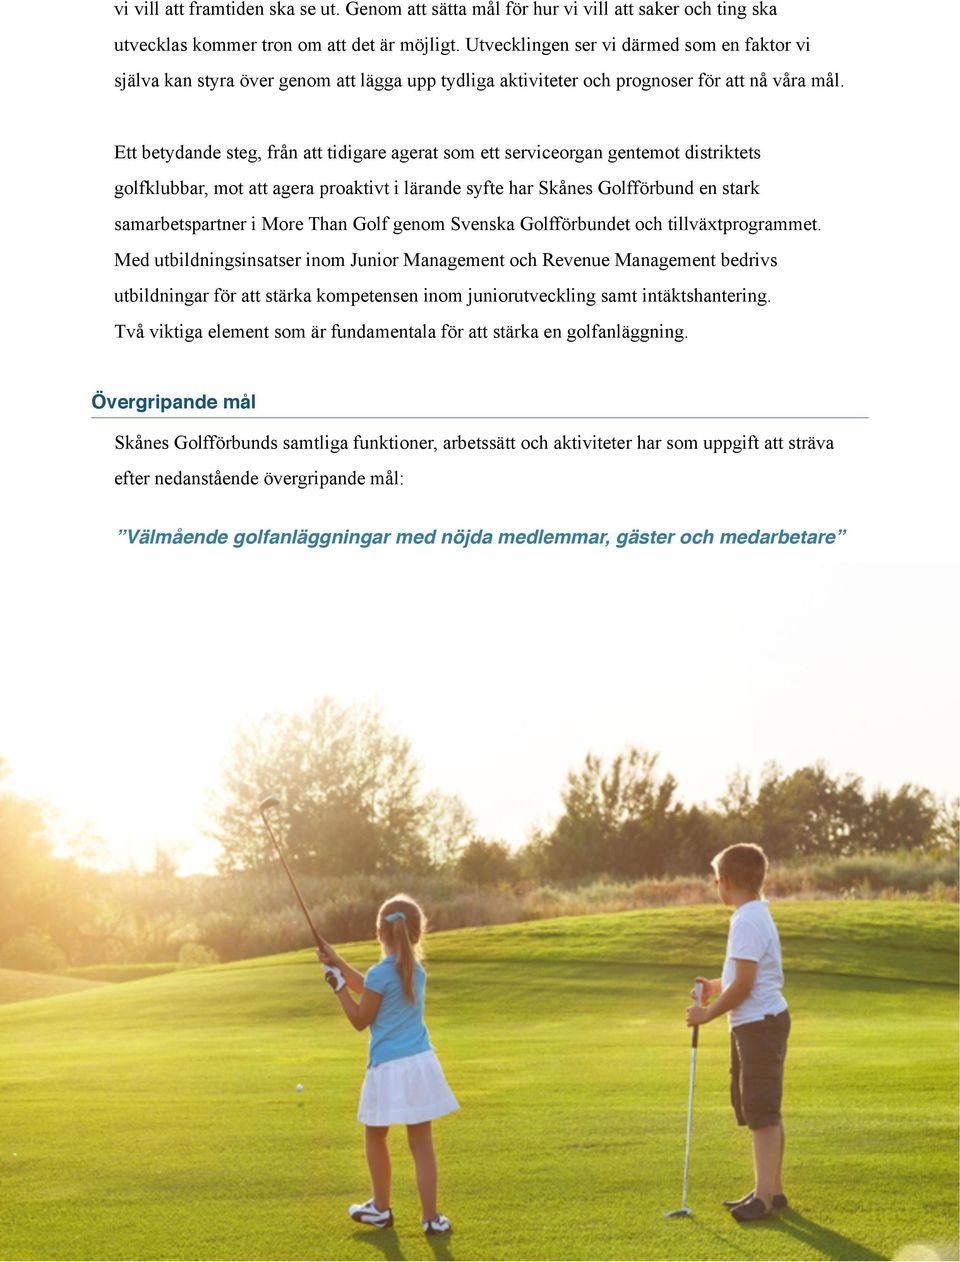 Ett betydande steg, från att tidigare agerat som ett serviceorgan gentemot distriktets golfklubbar, mot att agera proaktivt i lärande syfte har Skånes Golfförbund en stark samarbetspartner i More